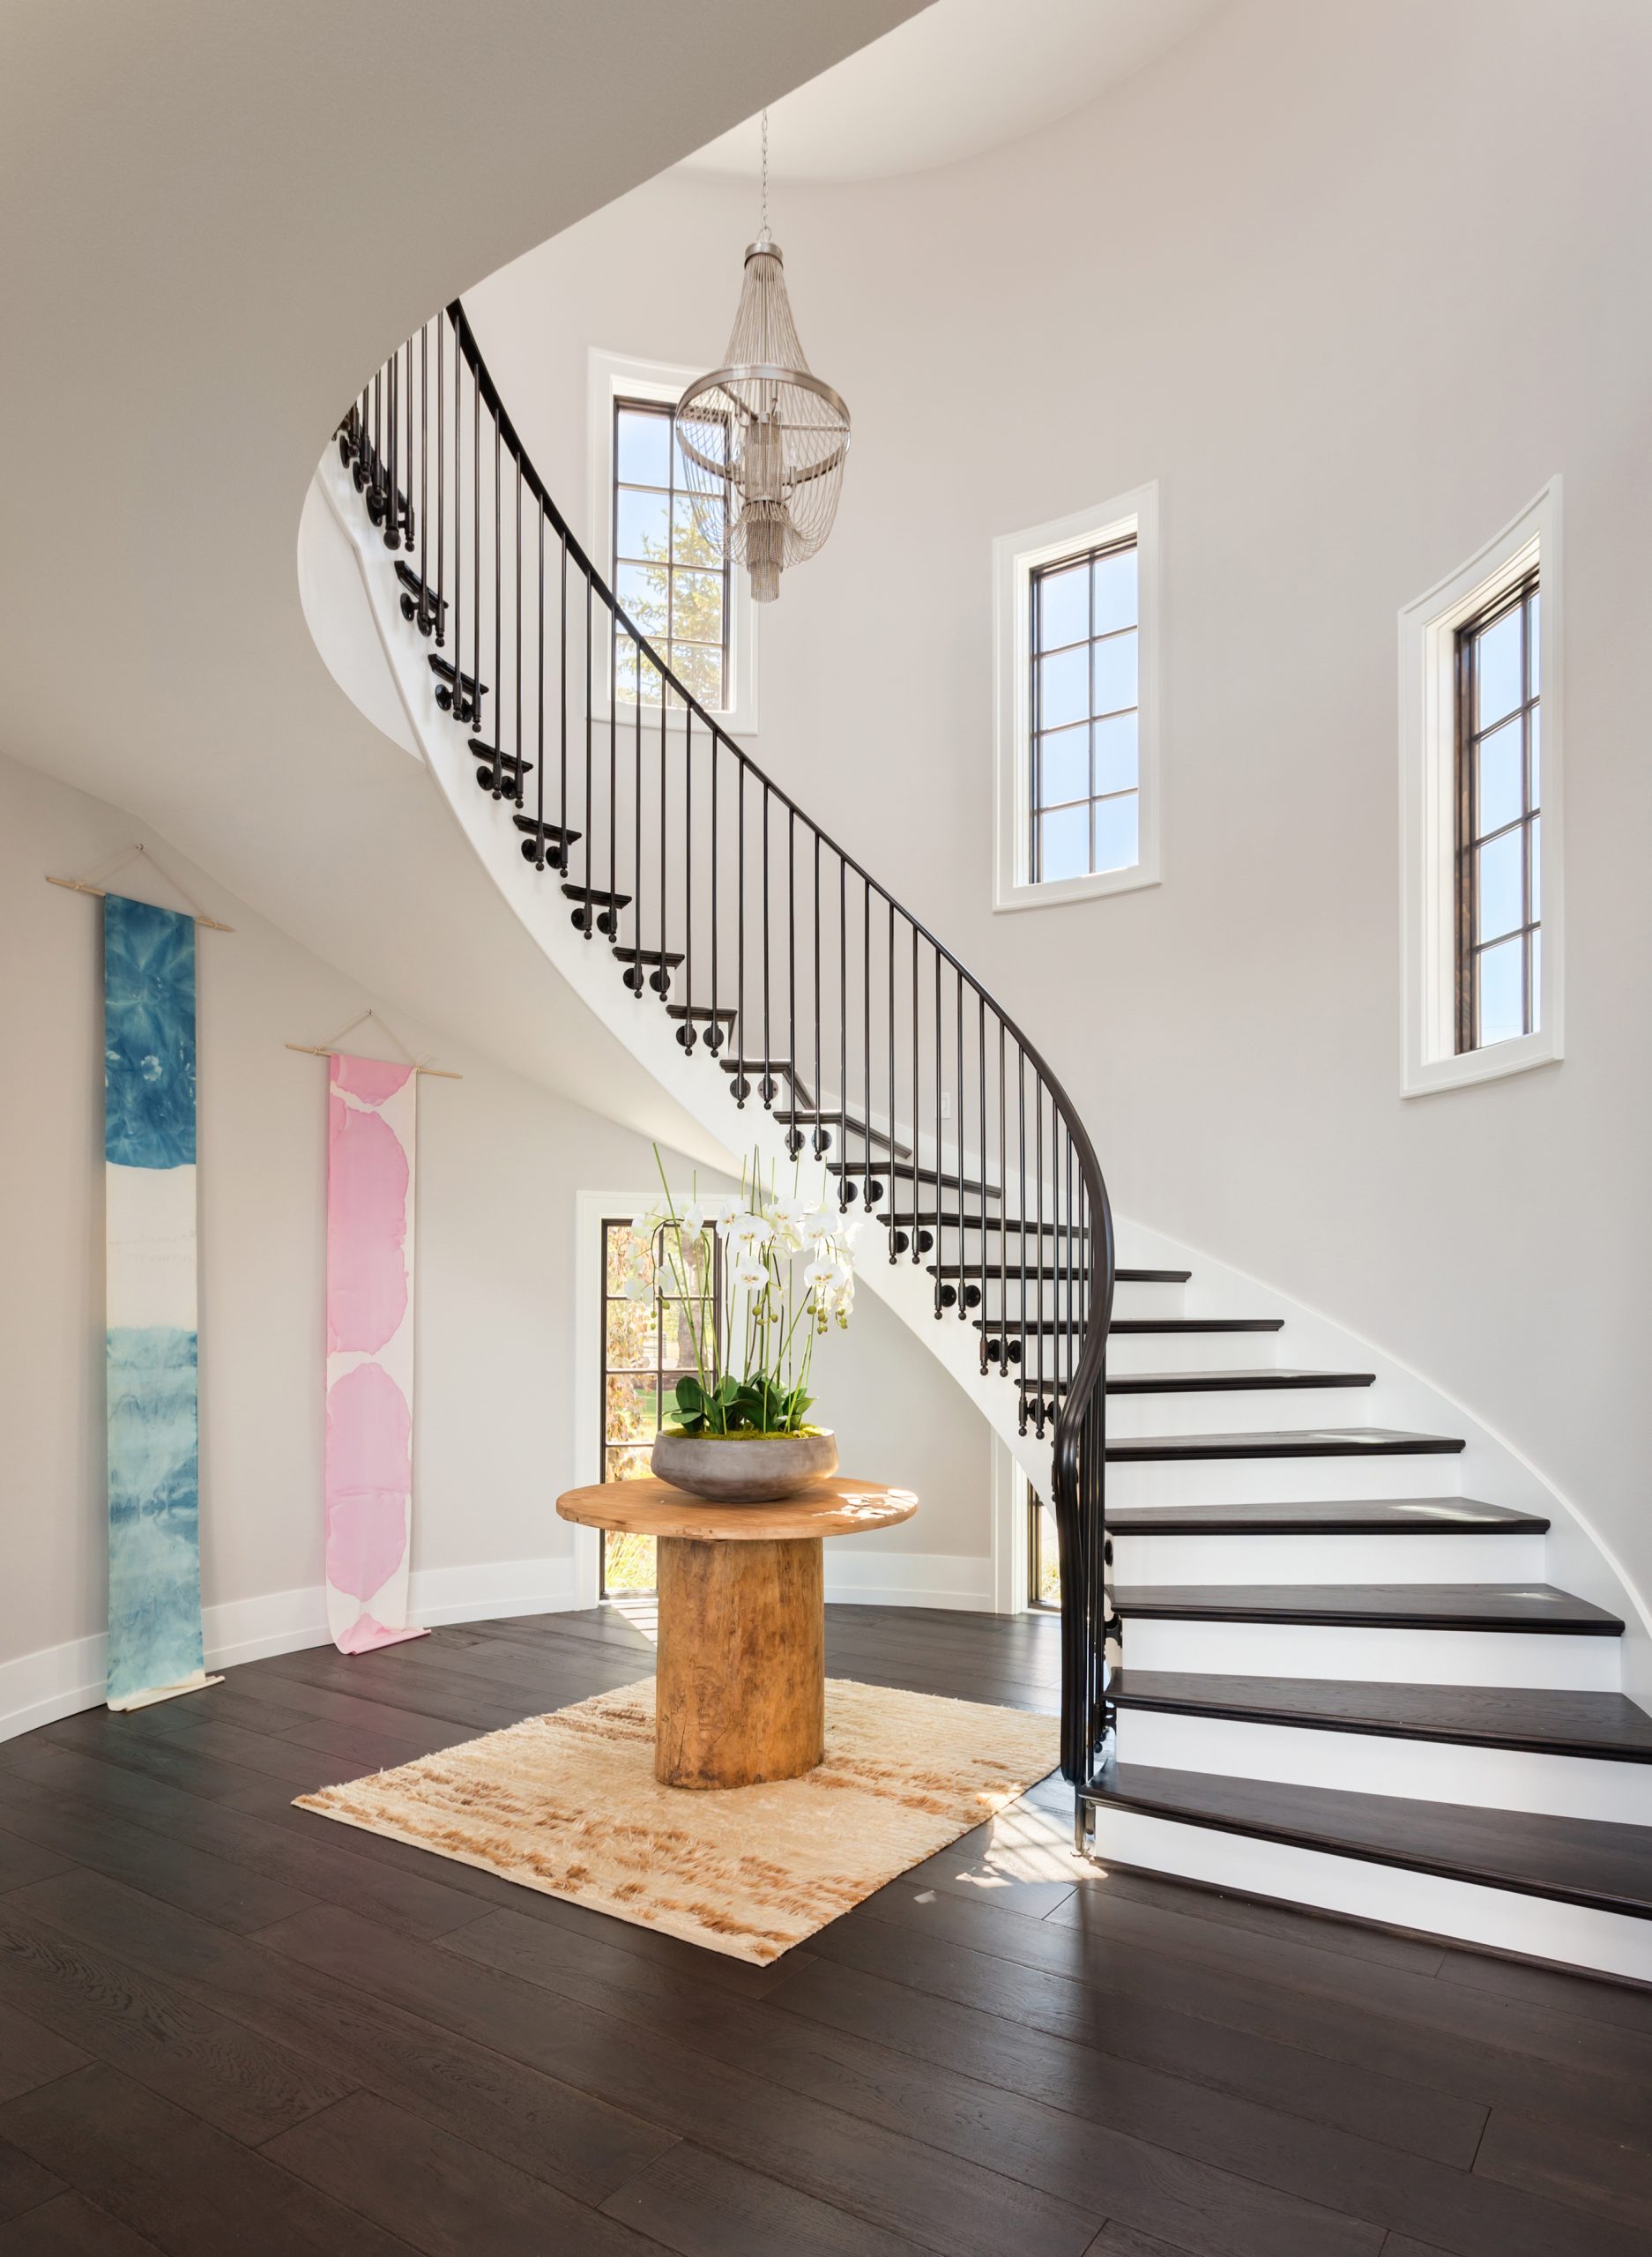 MW design workshop custom stairs spiral